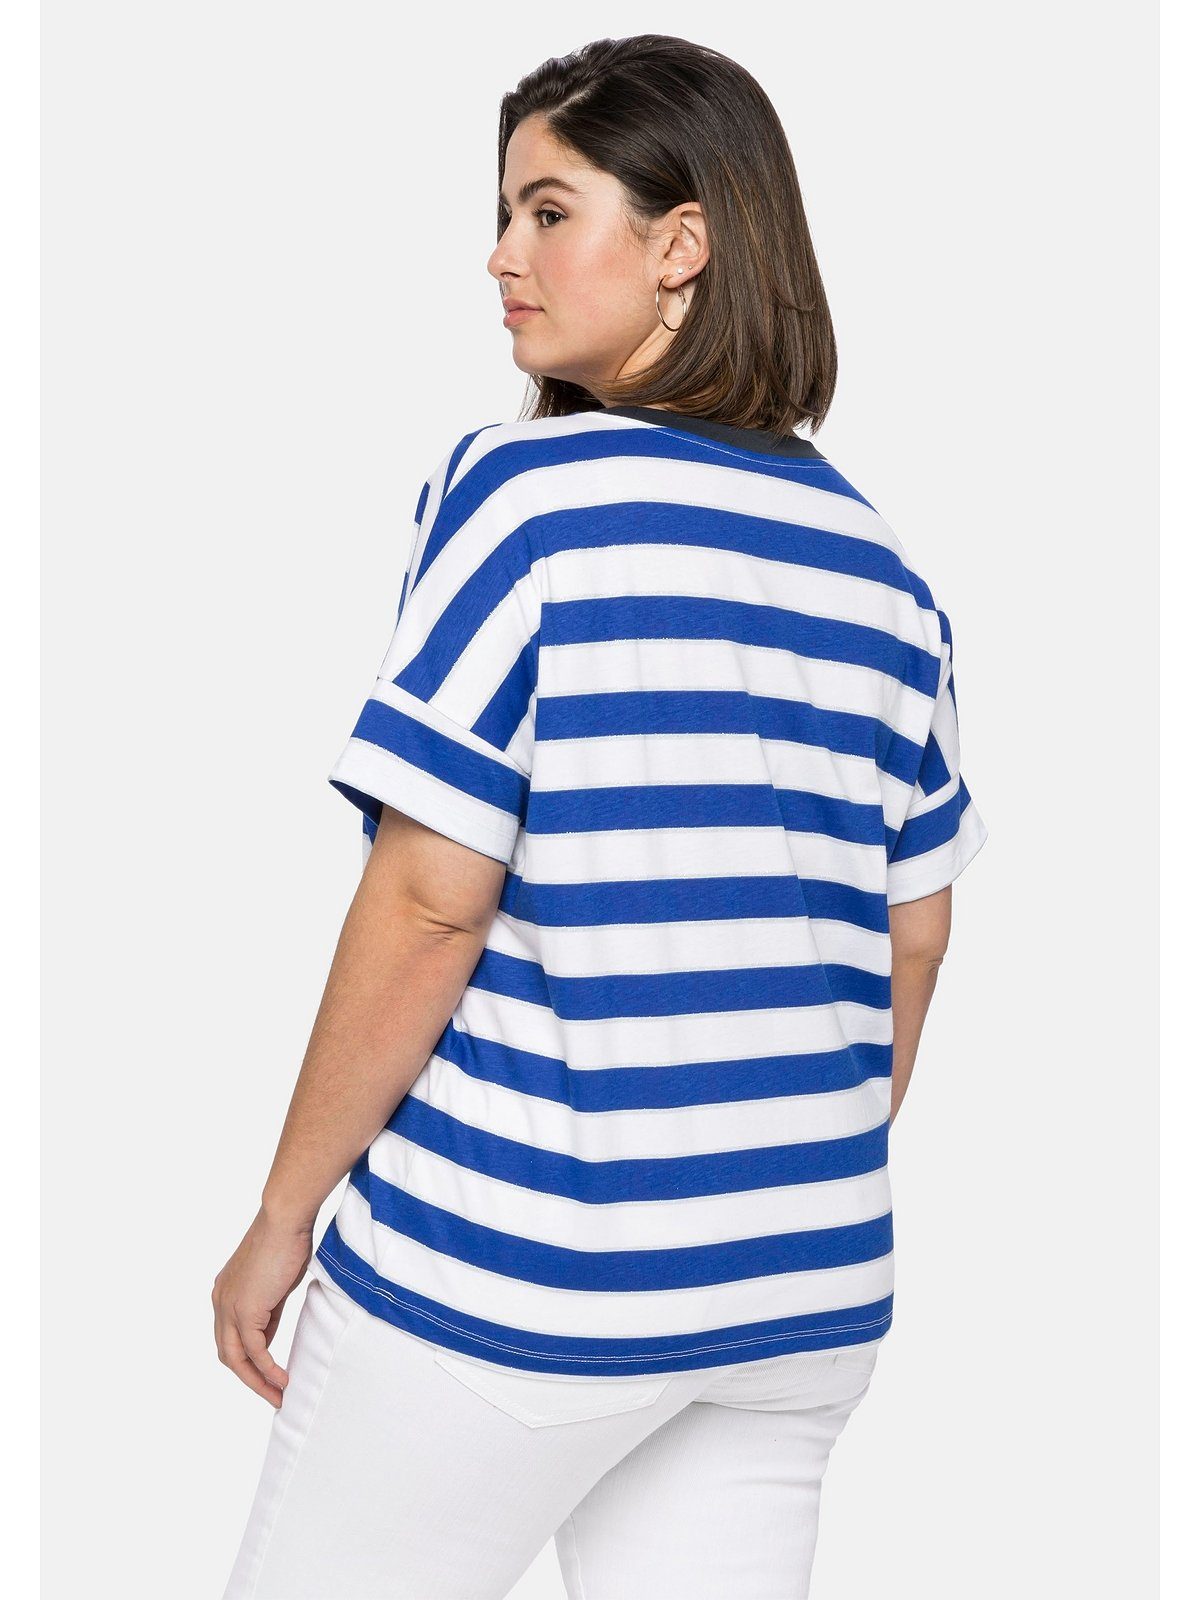 royalblau-weiß Oversize-Form Große mit Glitzergarn, Sheego in T-Shirt Größen